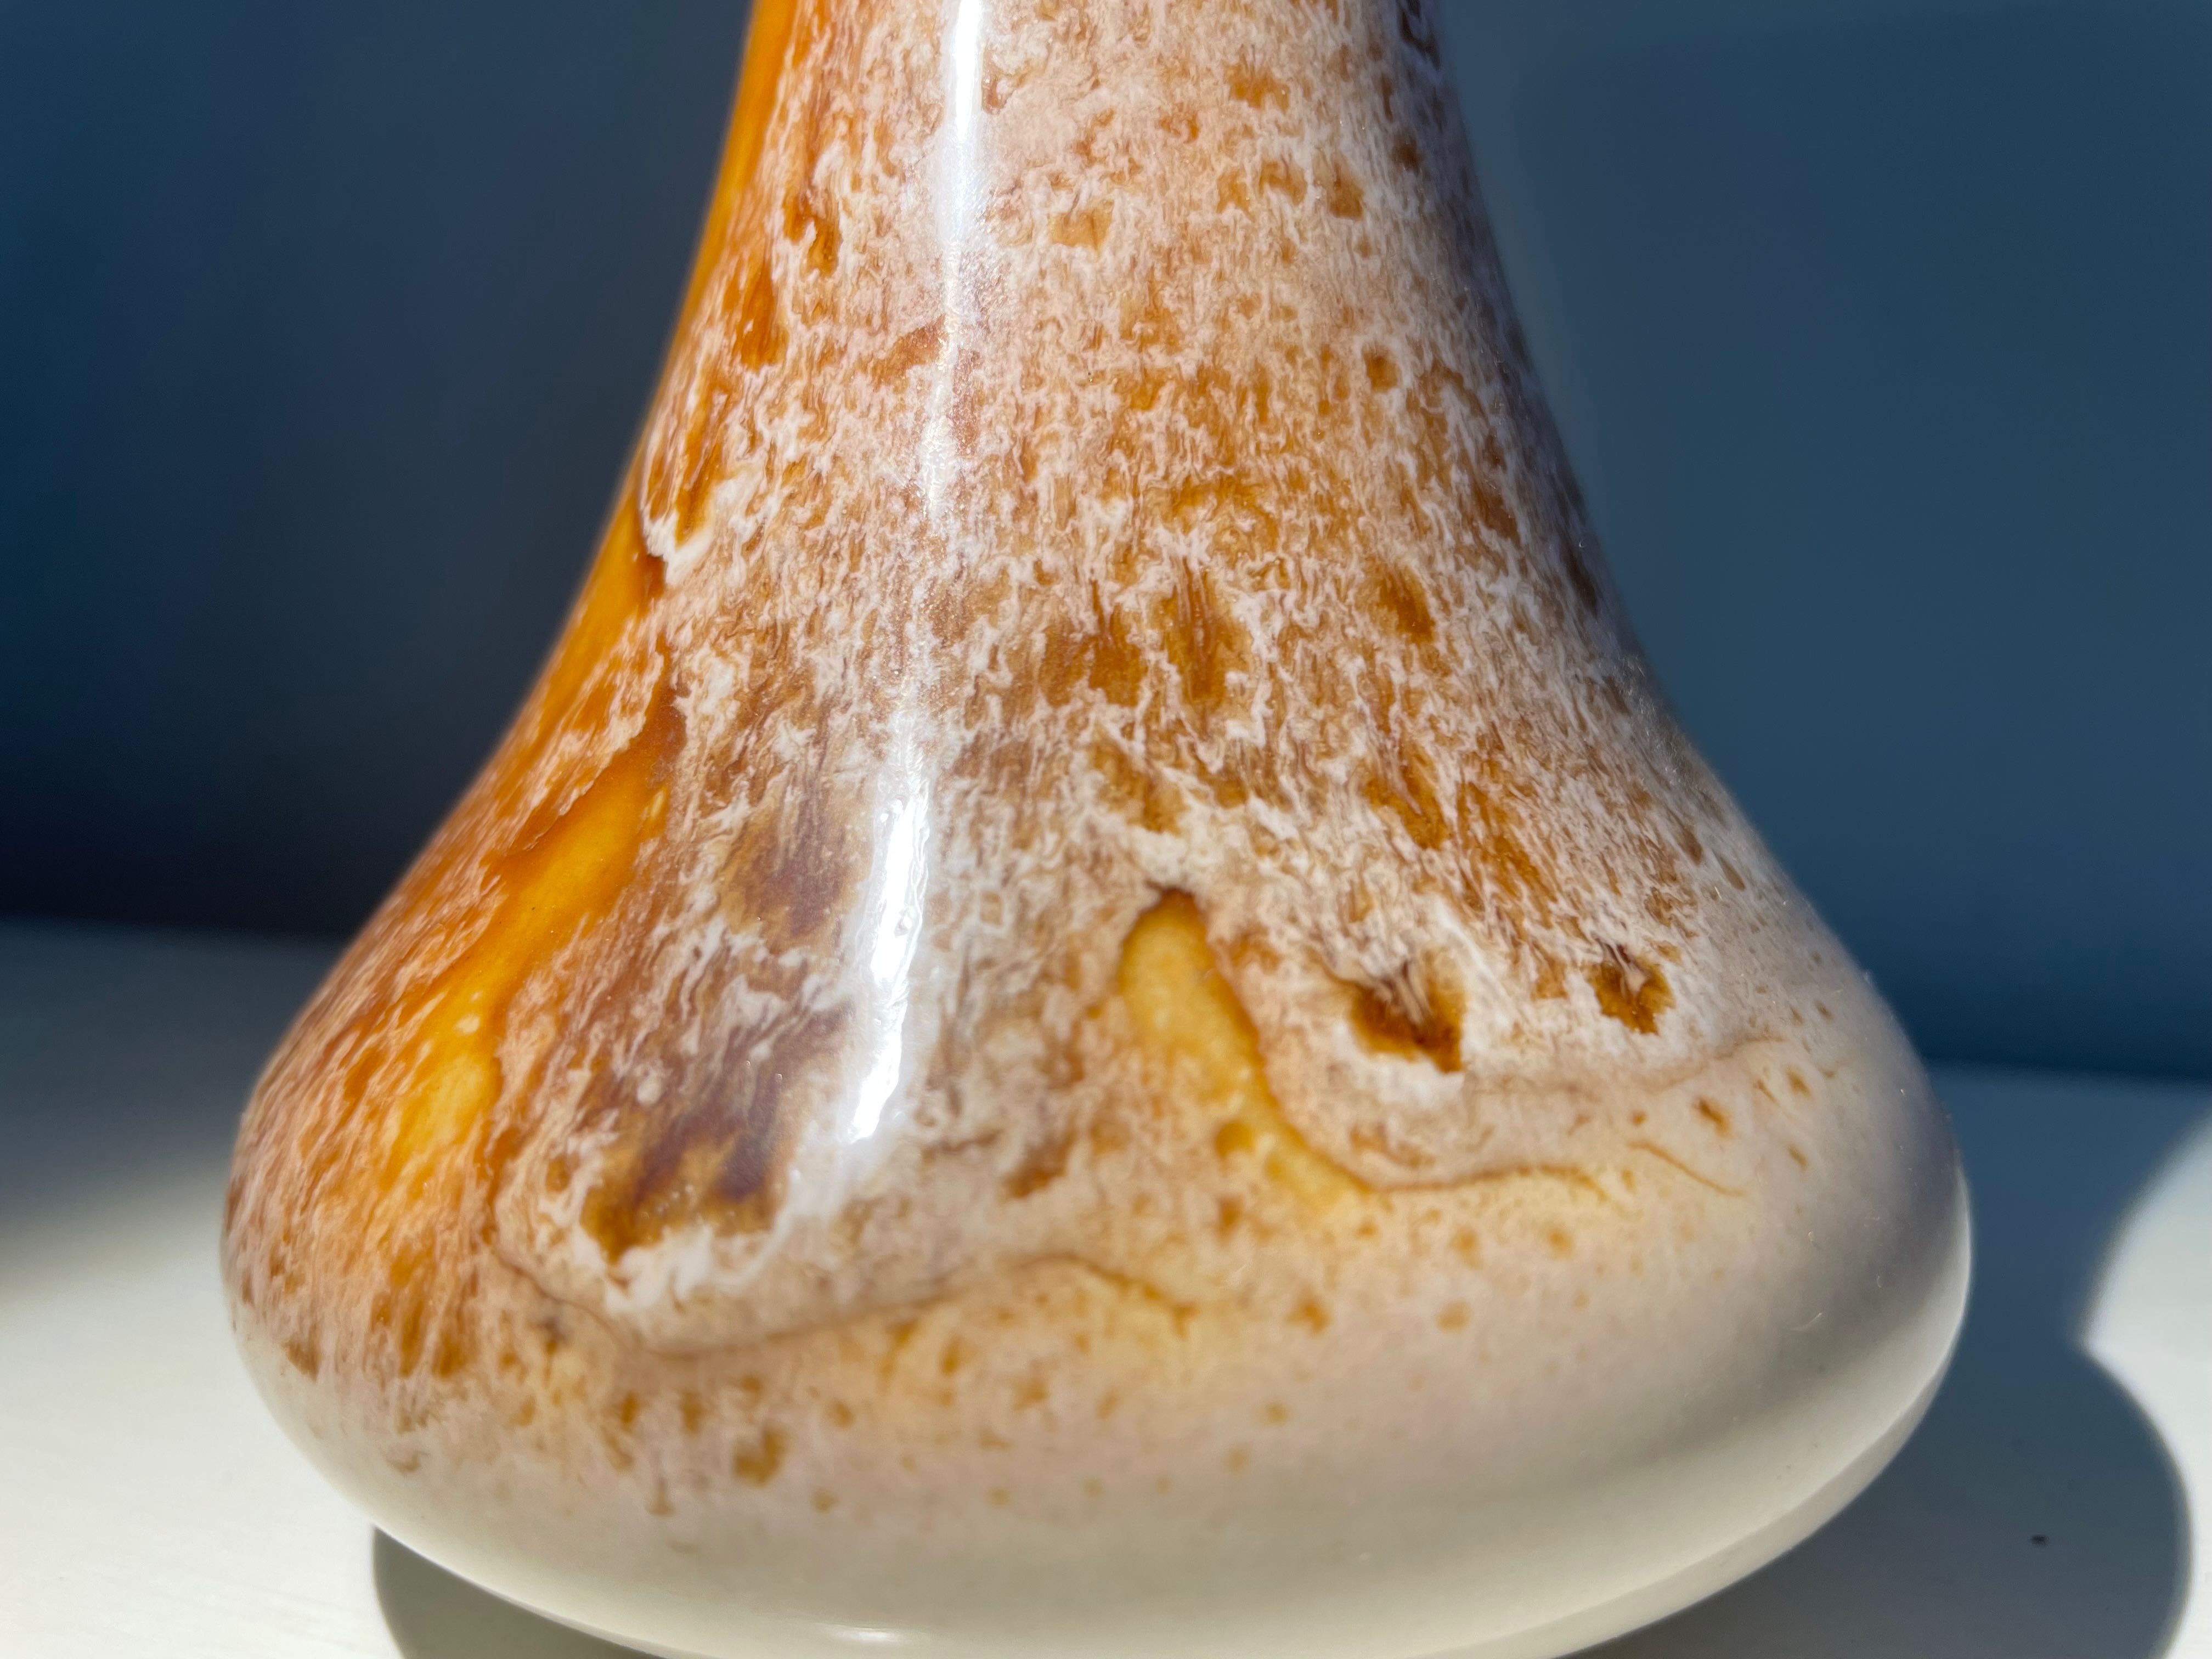 Przepięknie szkliwiony wazon Czechosłowacja. Stara ceramika